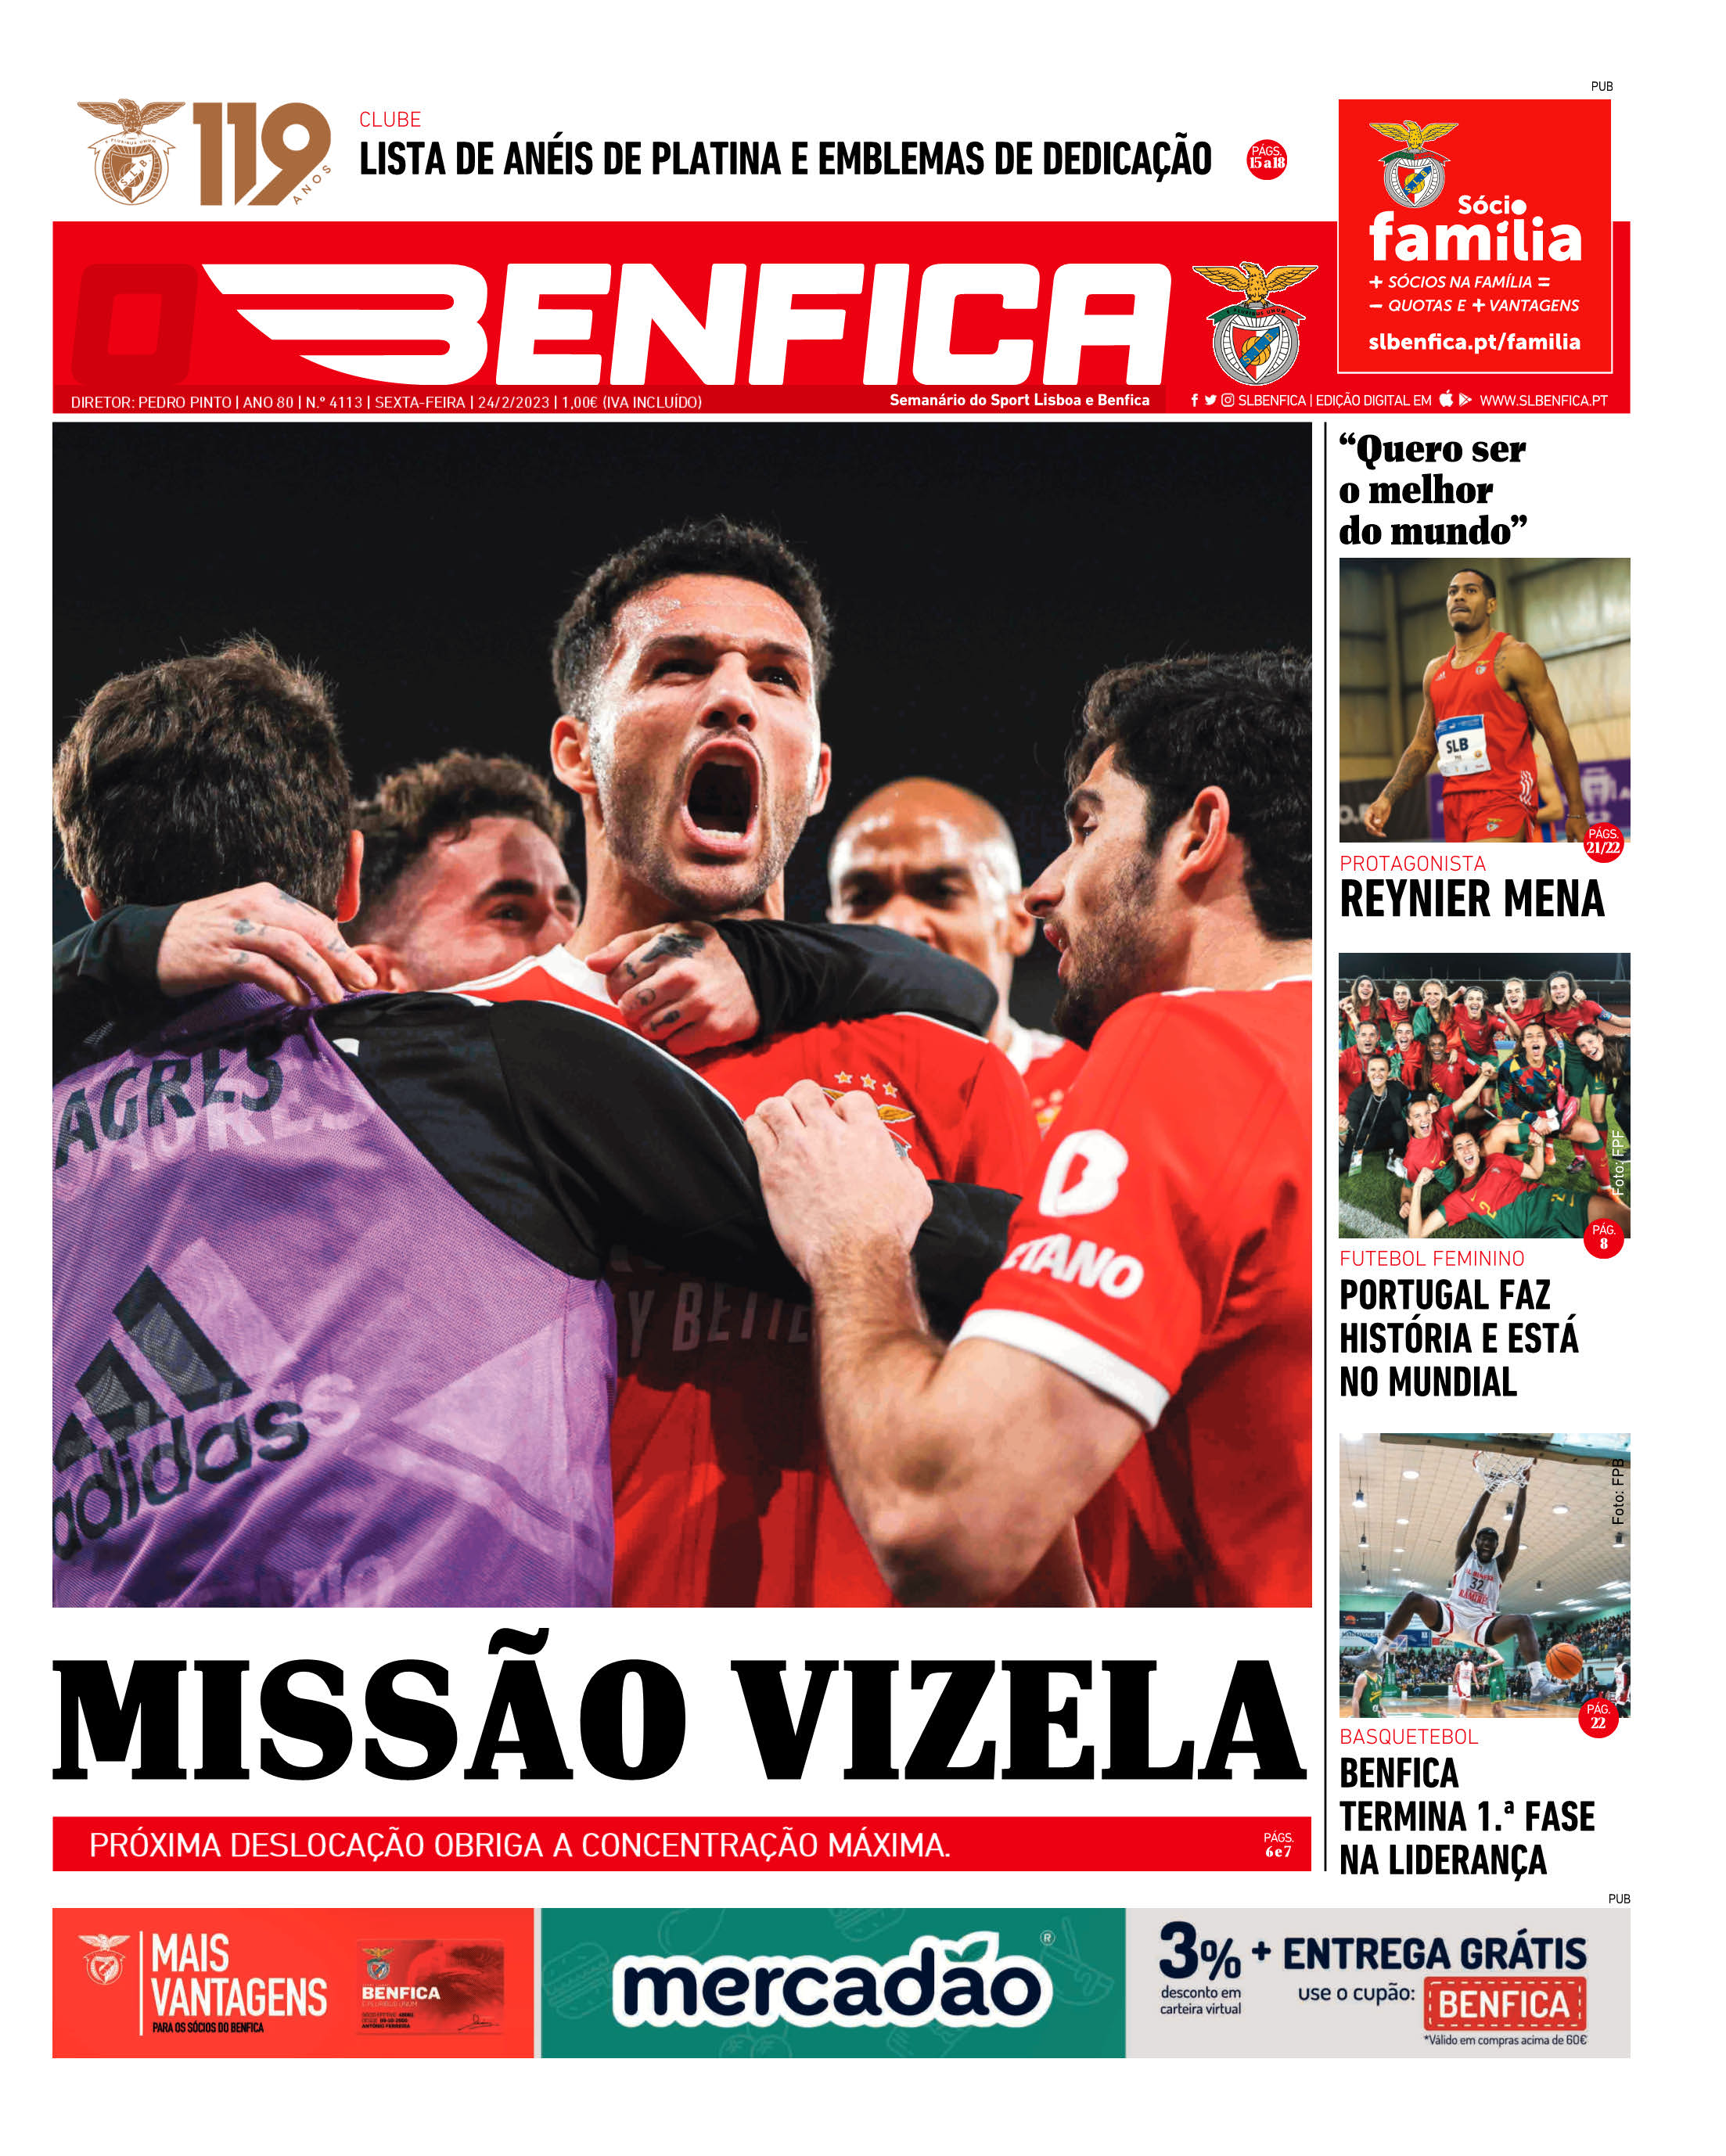 Sporting-Benfica: Liderança em jogo - Basquetebol - Jornal Record